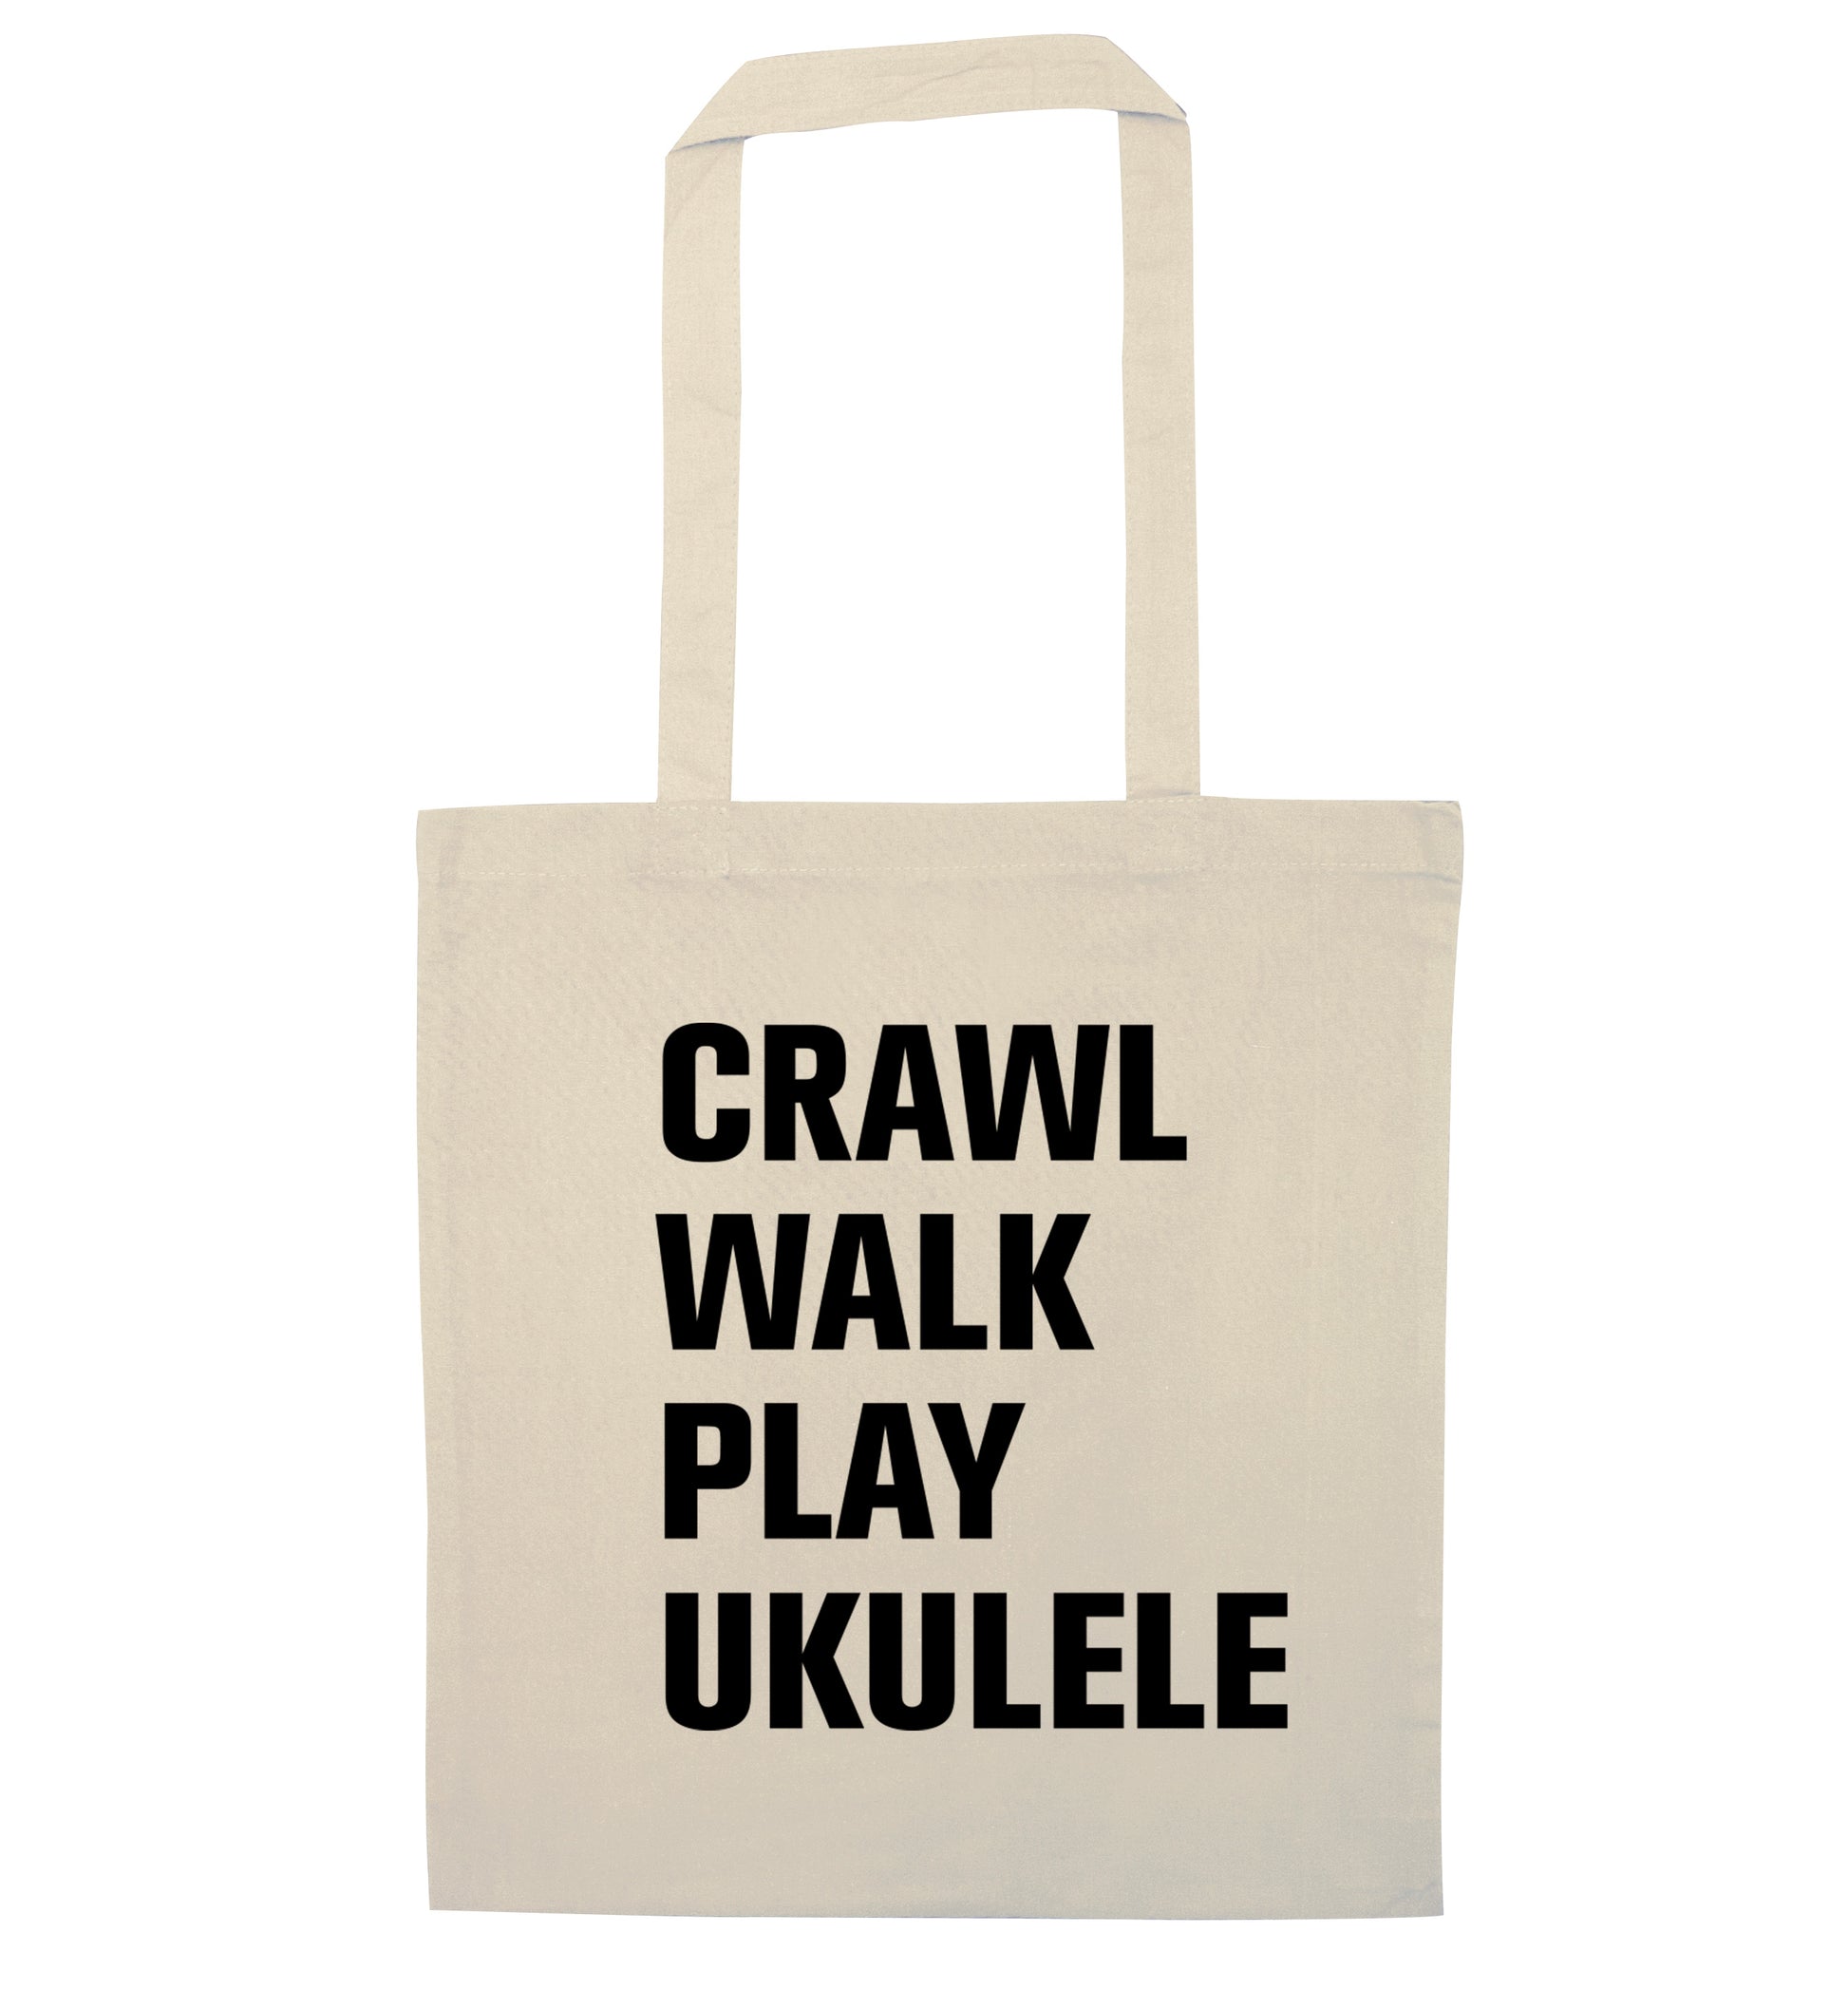 Crawl walk play ukulele natural tote bag